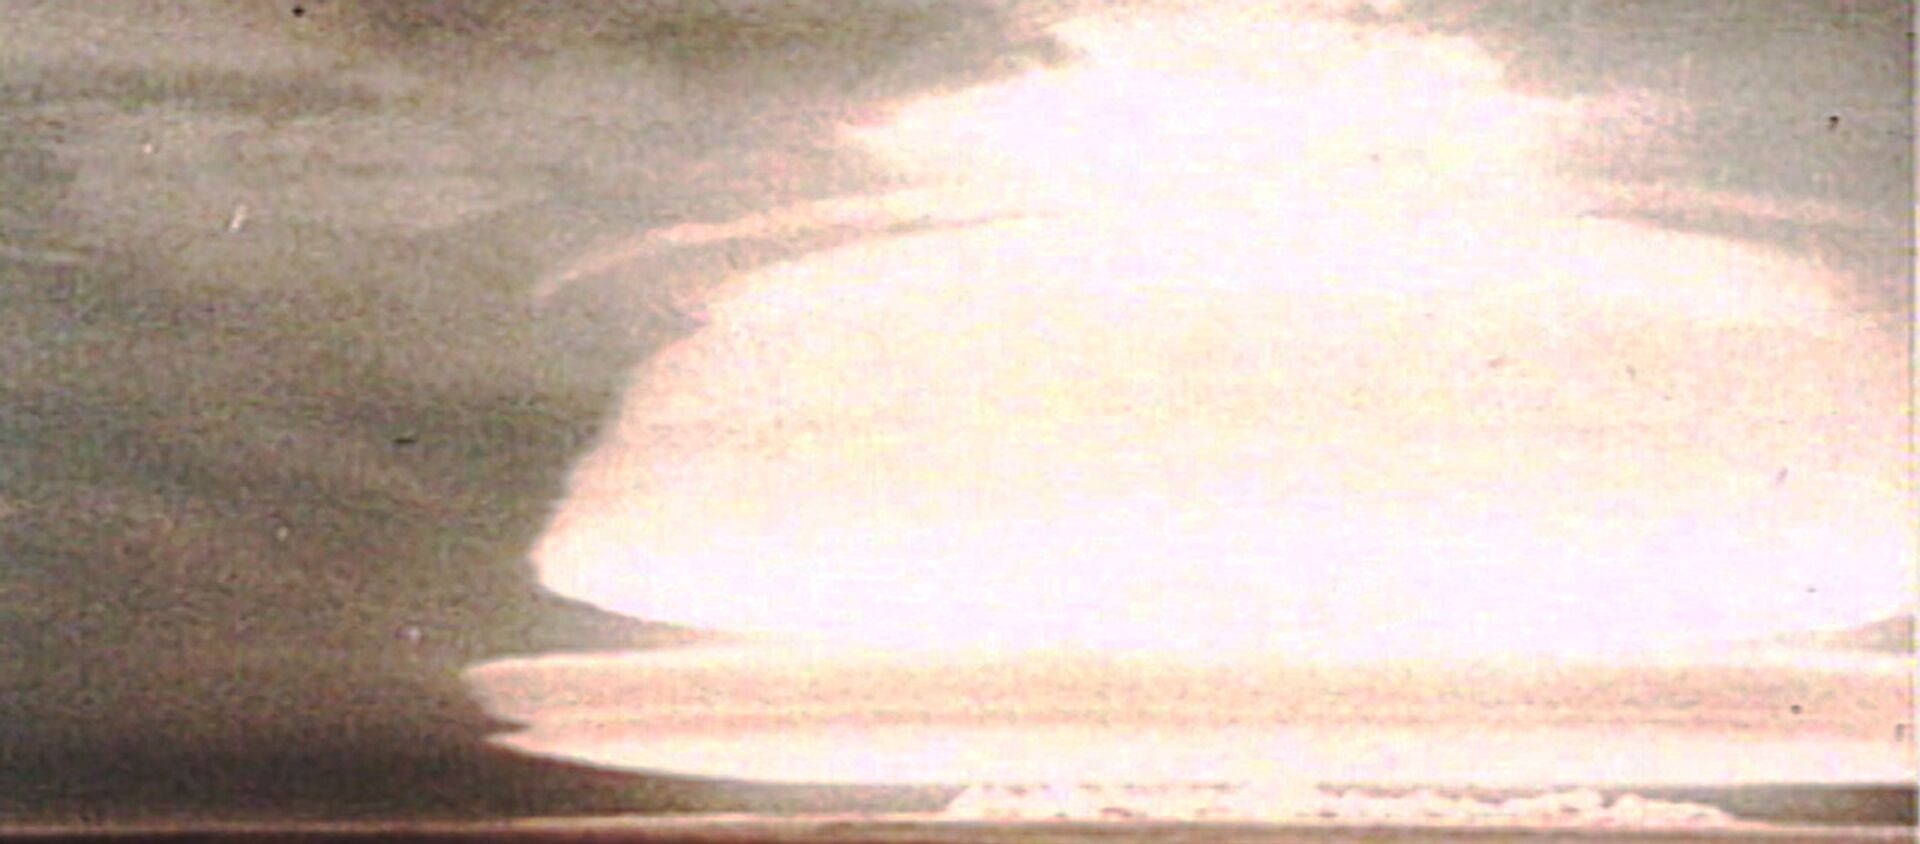 Испытание первой советской водородной бомбы в 1953 году.  Кадры из архива - Sputnik Казахстан, 1920, 12.08.2018